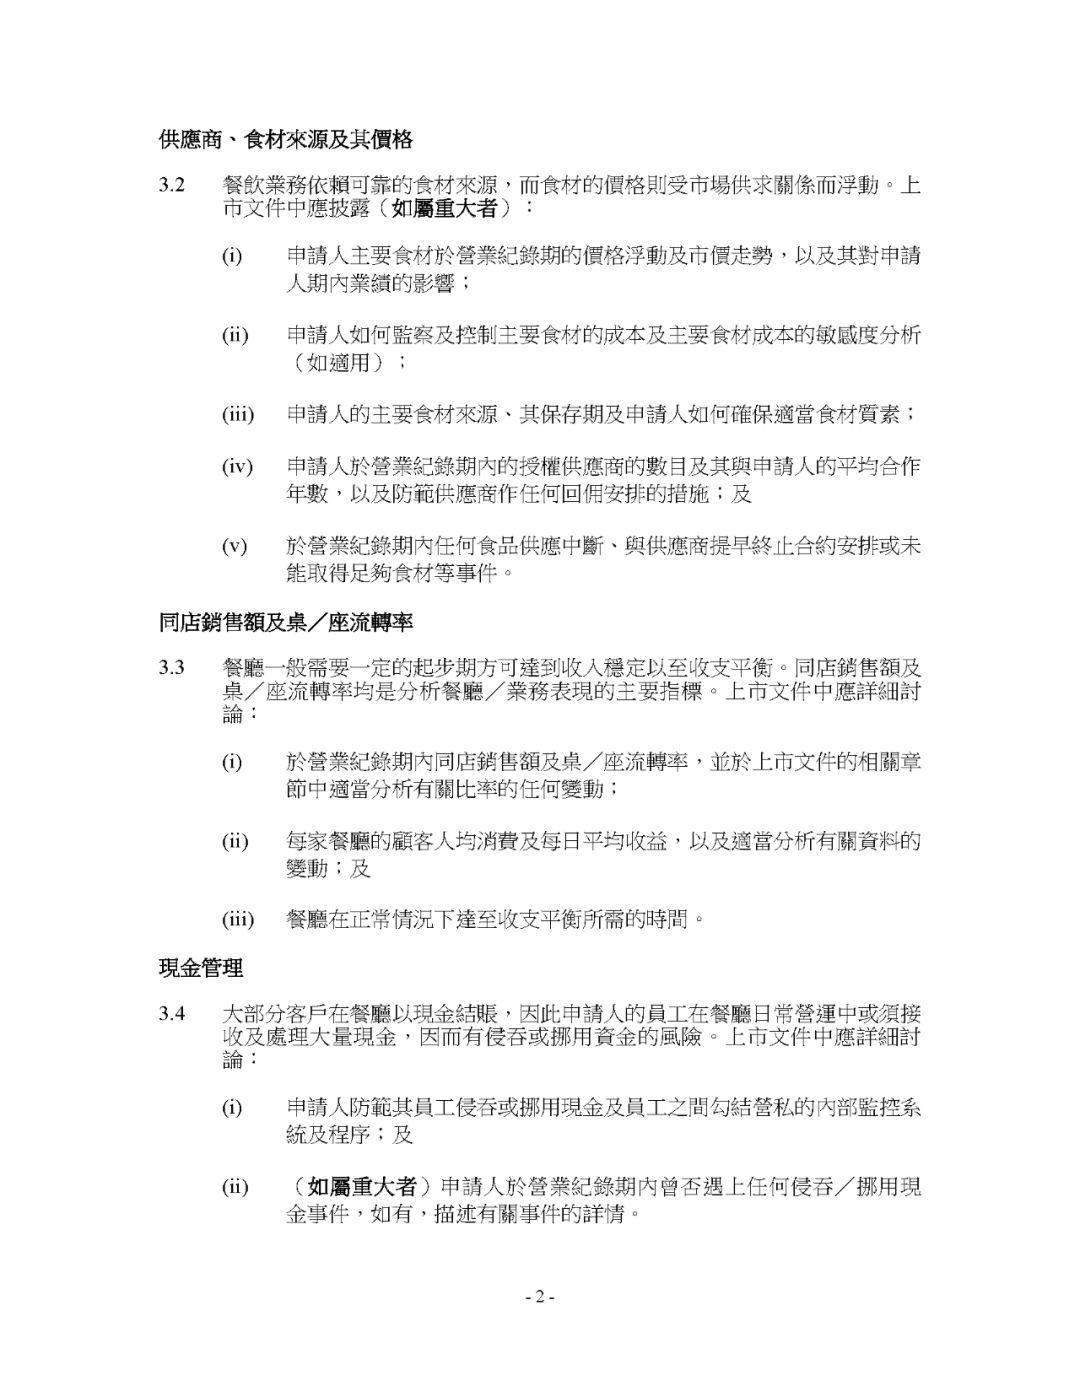 餐飲企業香港上市，港交所指引需要披露的七大事項